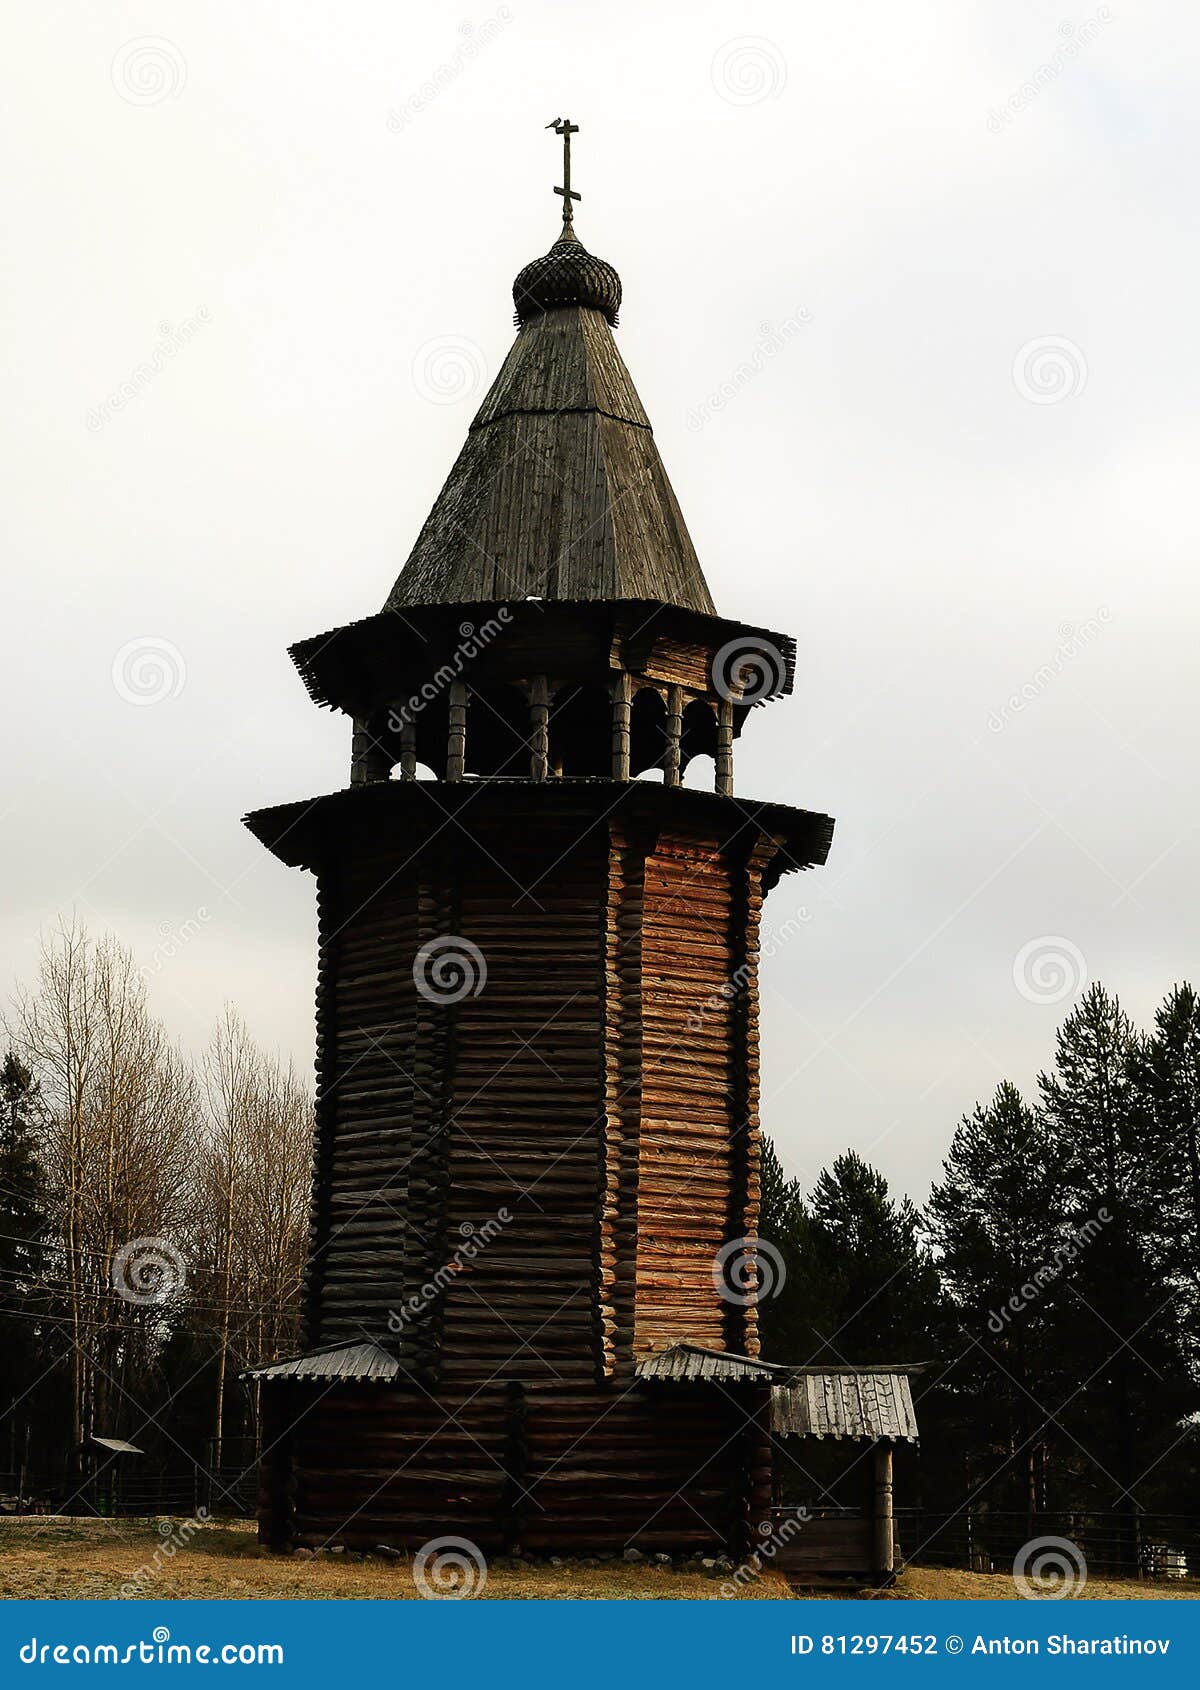 Rússia - Arkhangelsk - museu exterior de Forest Park do subúrbio no inverno - belltower de madeira cristão ortodoxo histórico